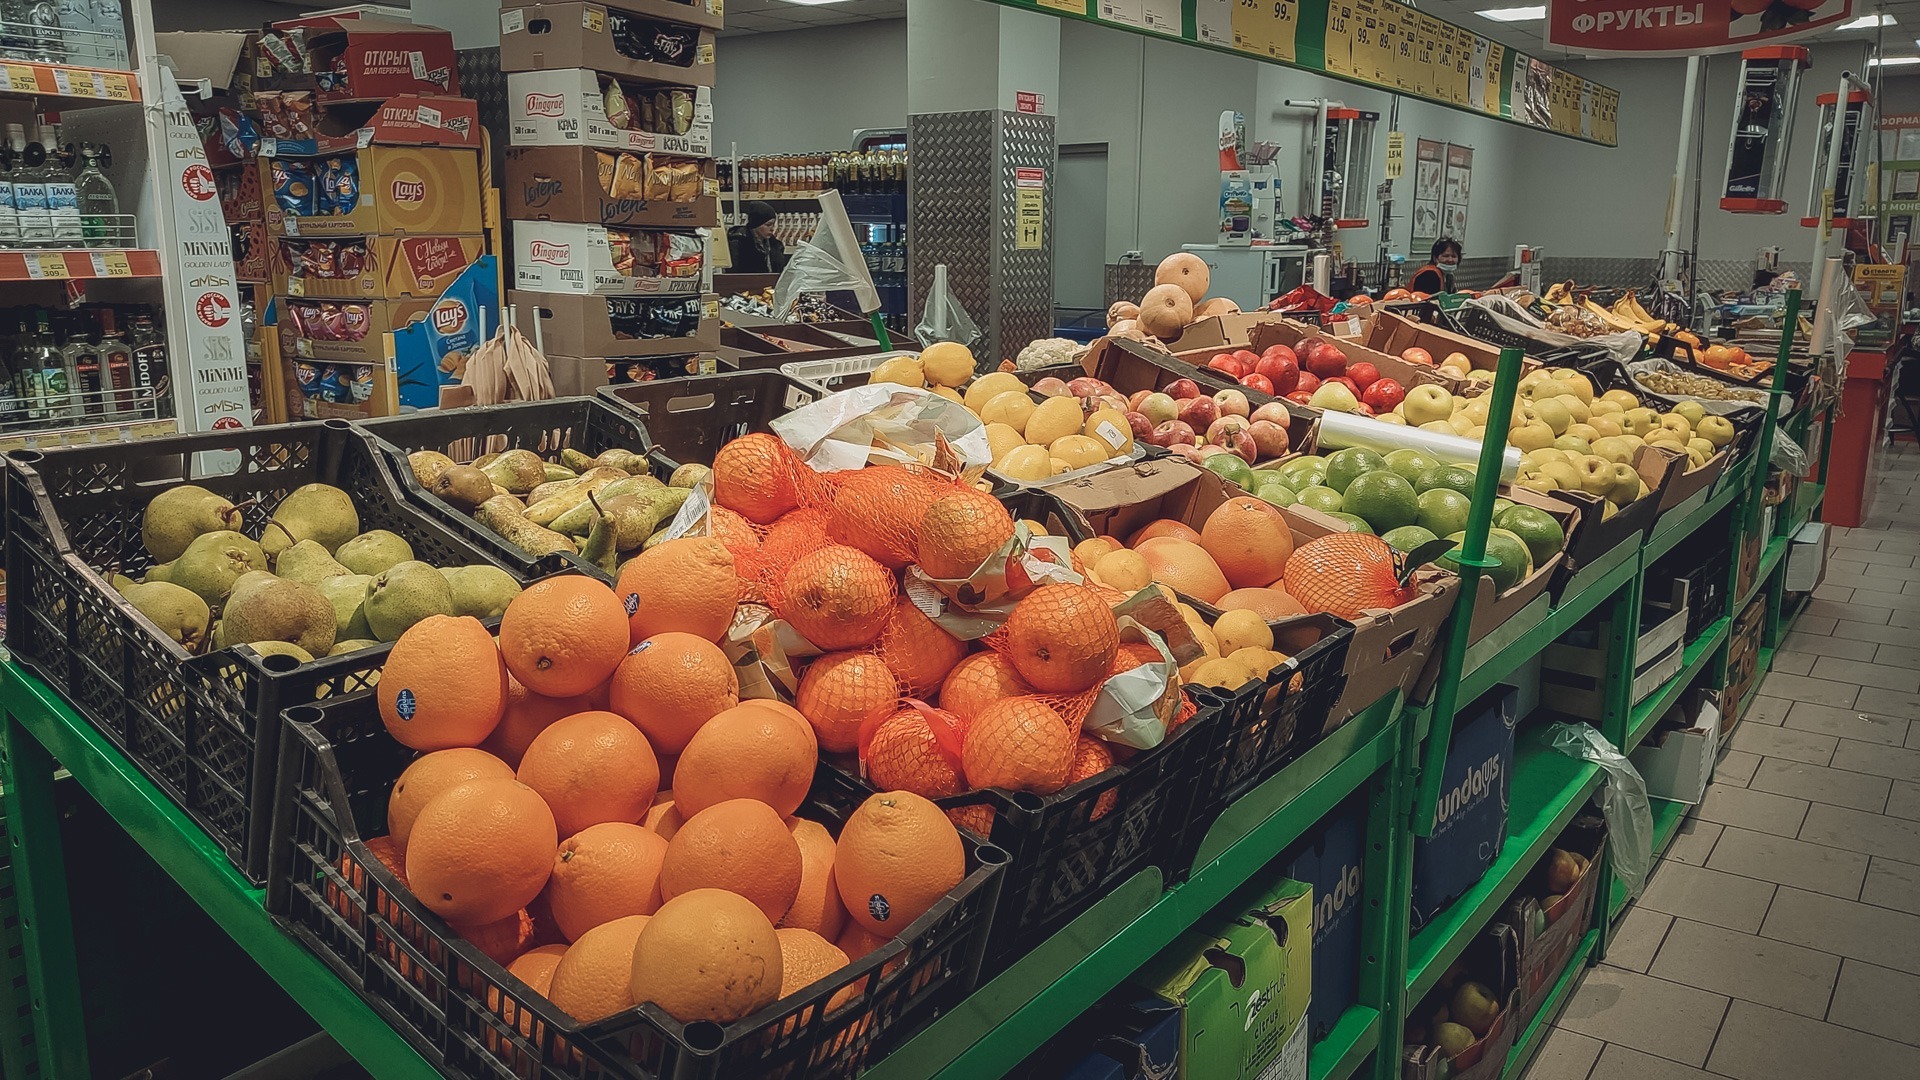 Пермьстат: в Пермском крае выросли цены на овощи и авиаперелеты в июле 